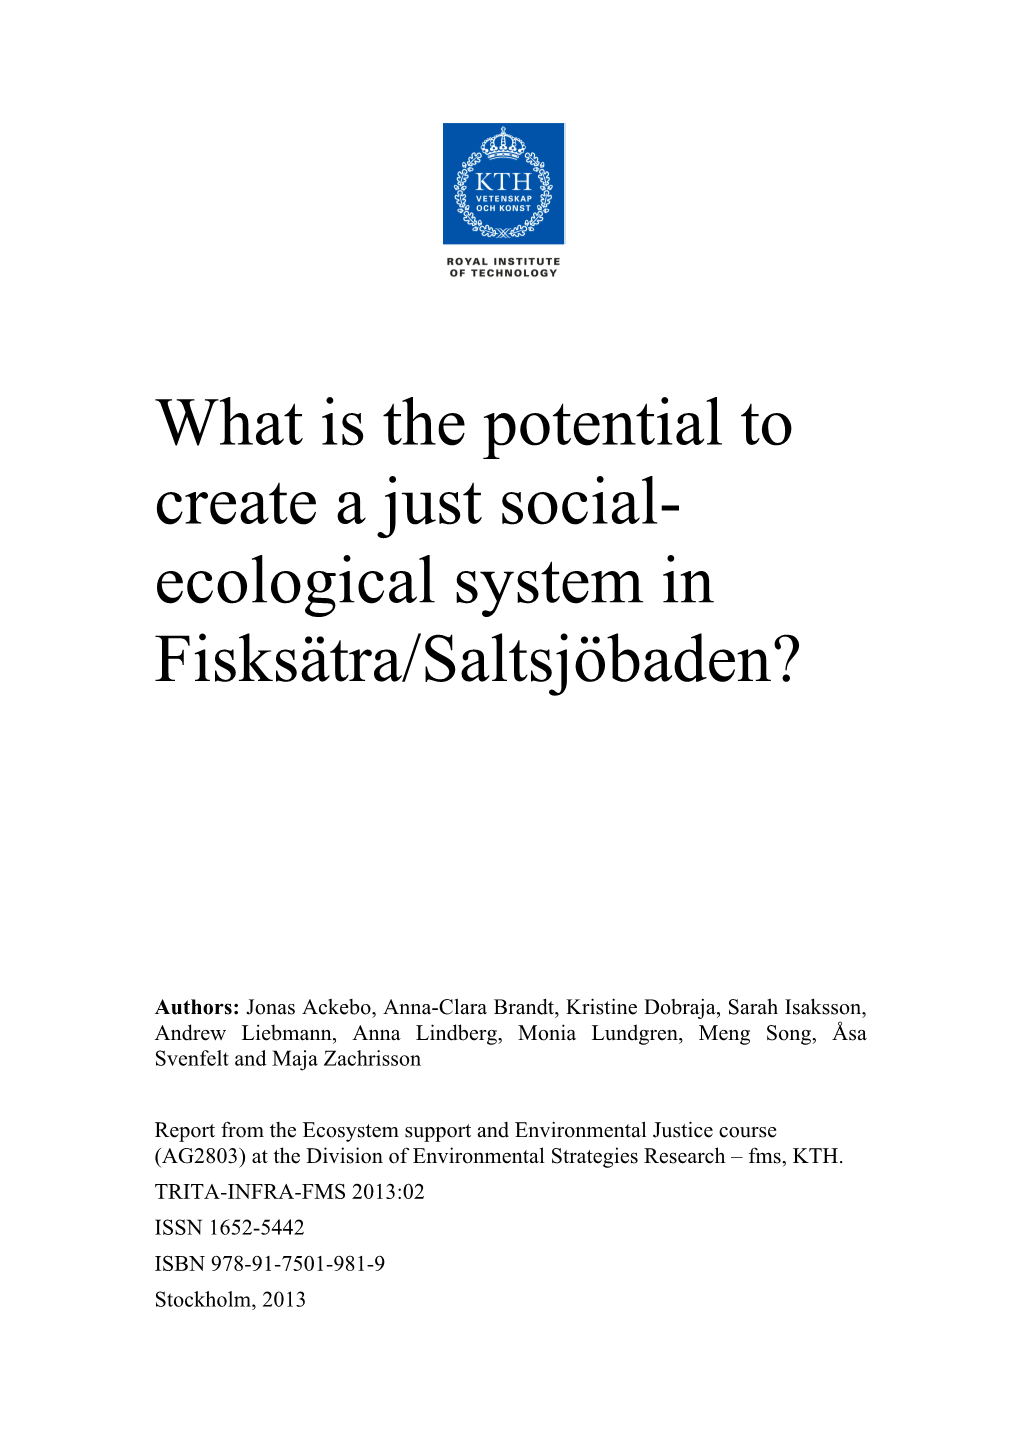 Ecological System in Fisksätra/Saltsjöbaden?